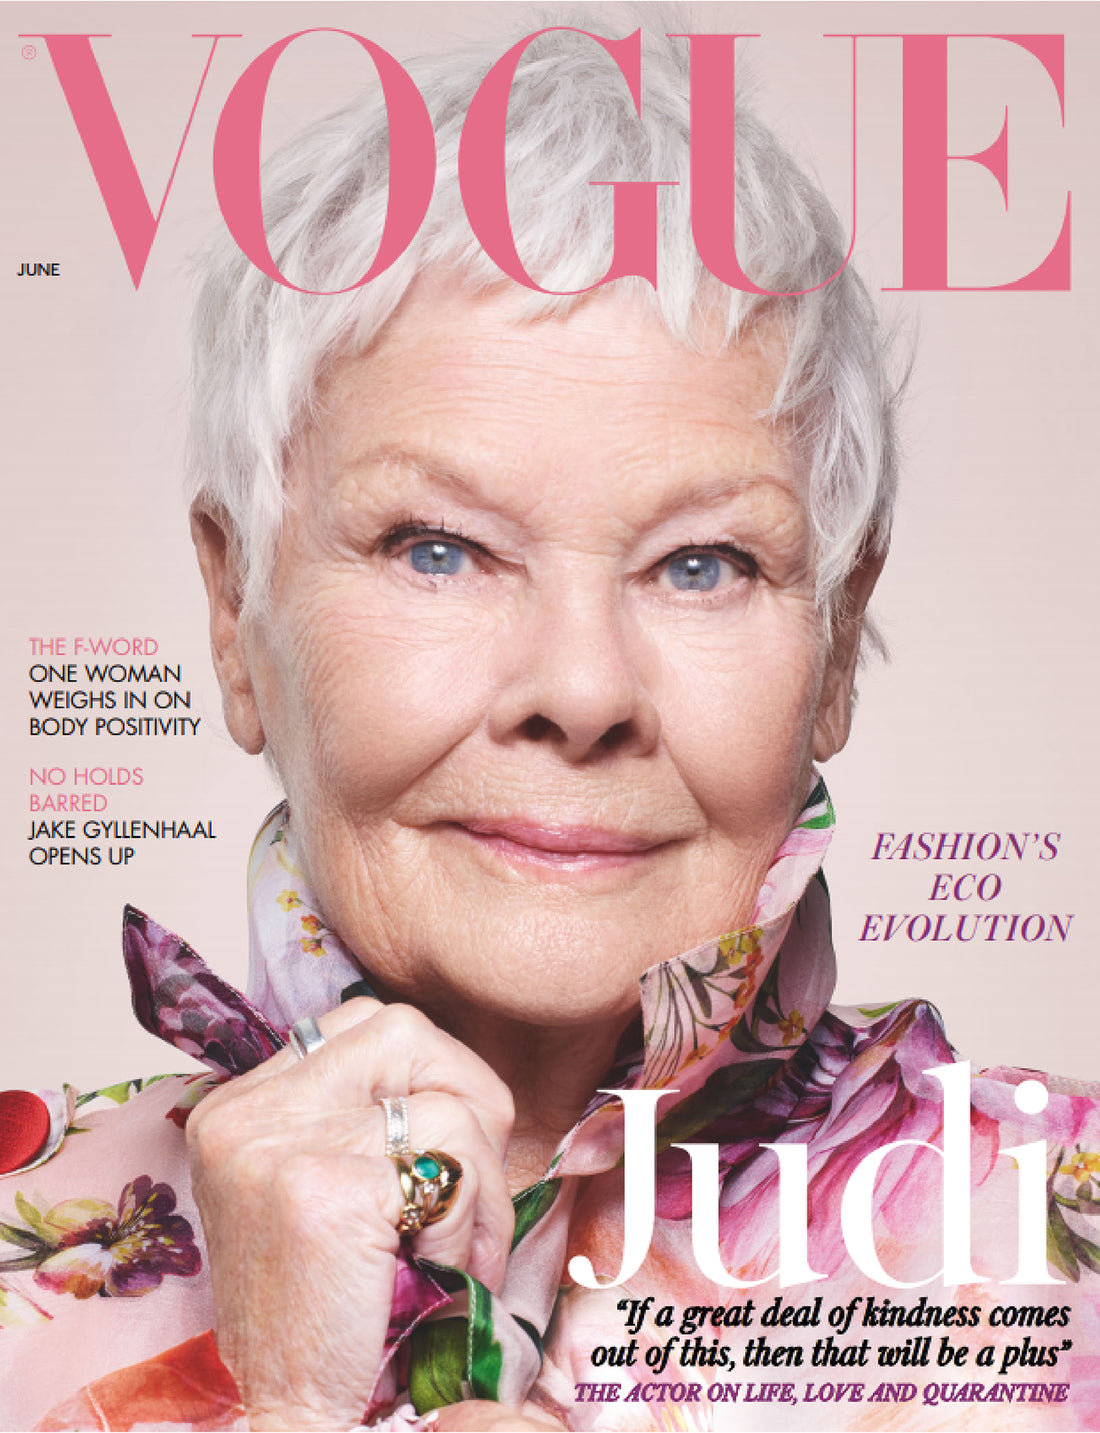 Gets Glowing! British Vogue June 2020